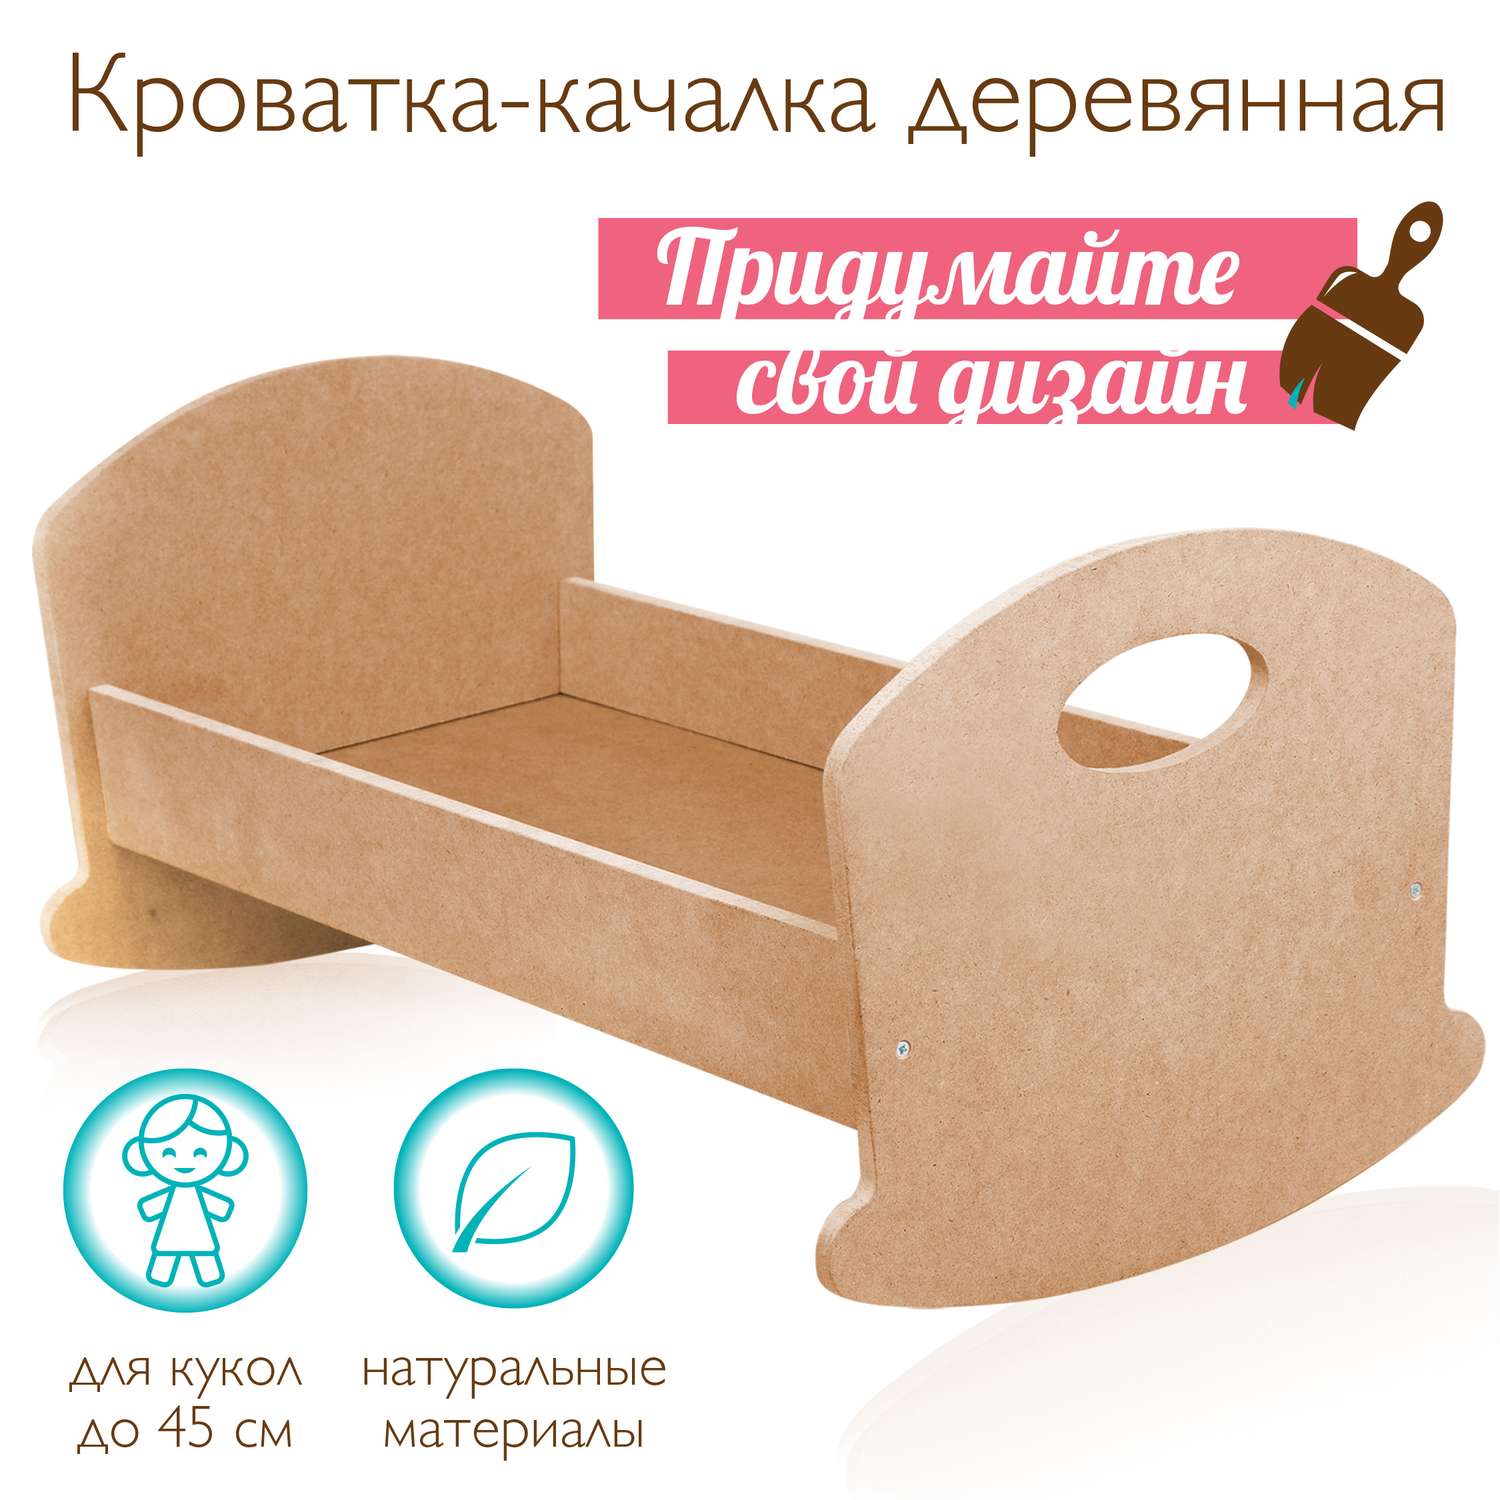 Кроватка-люлька для куклы Mary Poppins деревянная игрушечная 46x25x23 см создай свой дизайн 67405 - фото 1